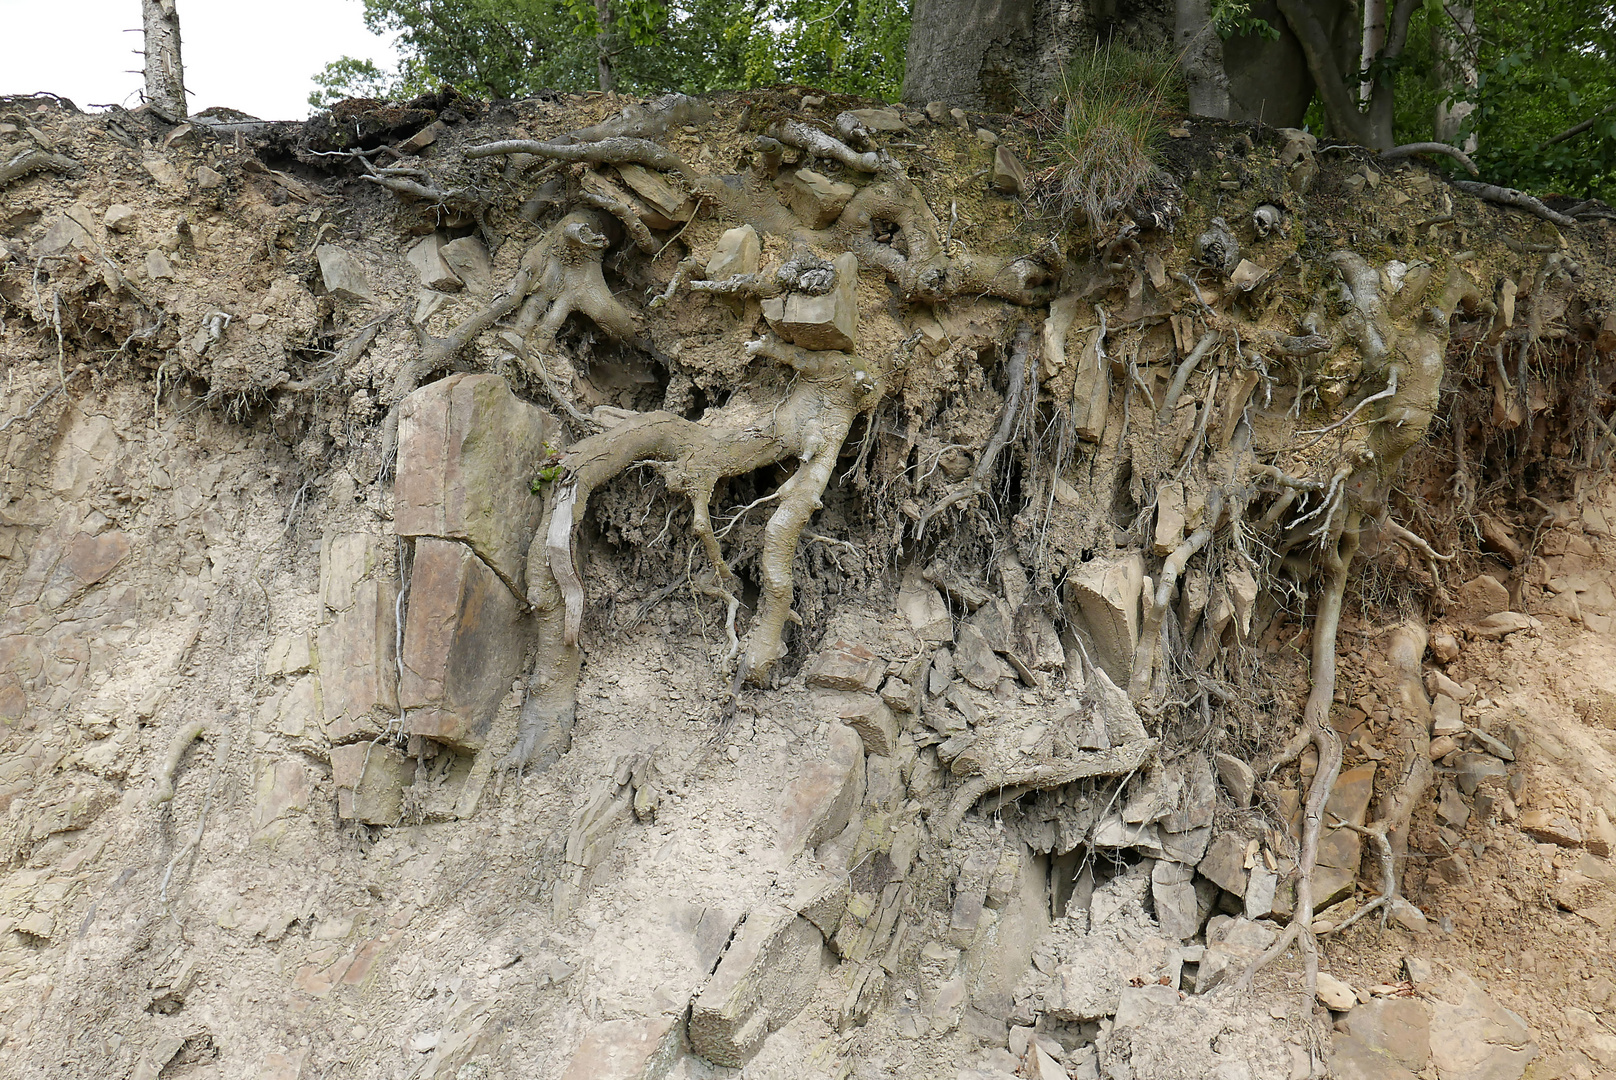 Aufschluss am Rennweg im Arnsberger Wald: wie sich die Baumwurzeln im Sandstein verankern